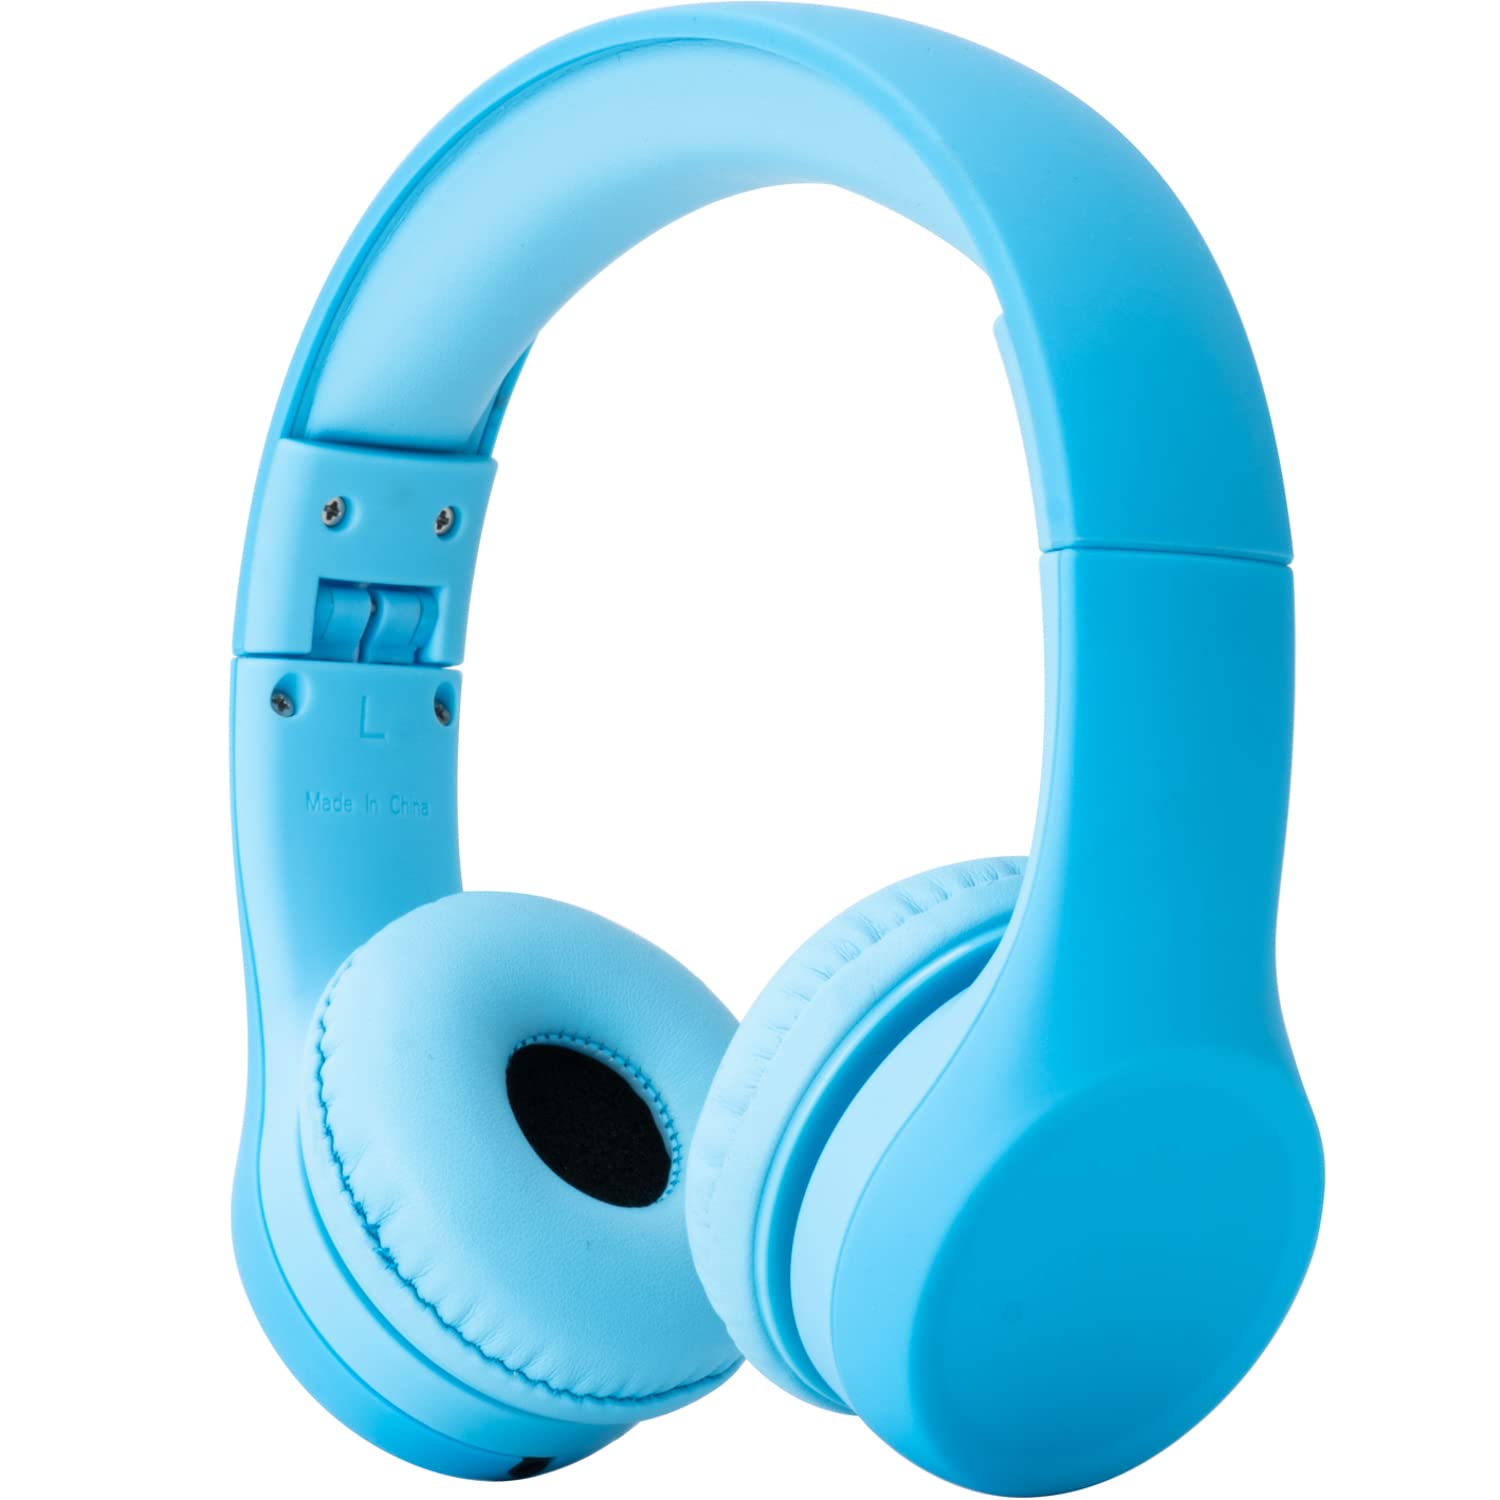 Snug Auriculares Play+ Kids con limitación de volumen para niños pequeños (niños/niñas) - Azul